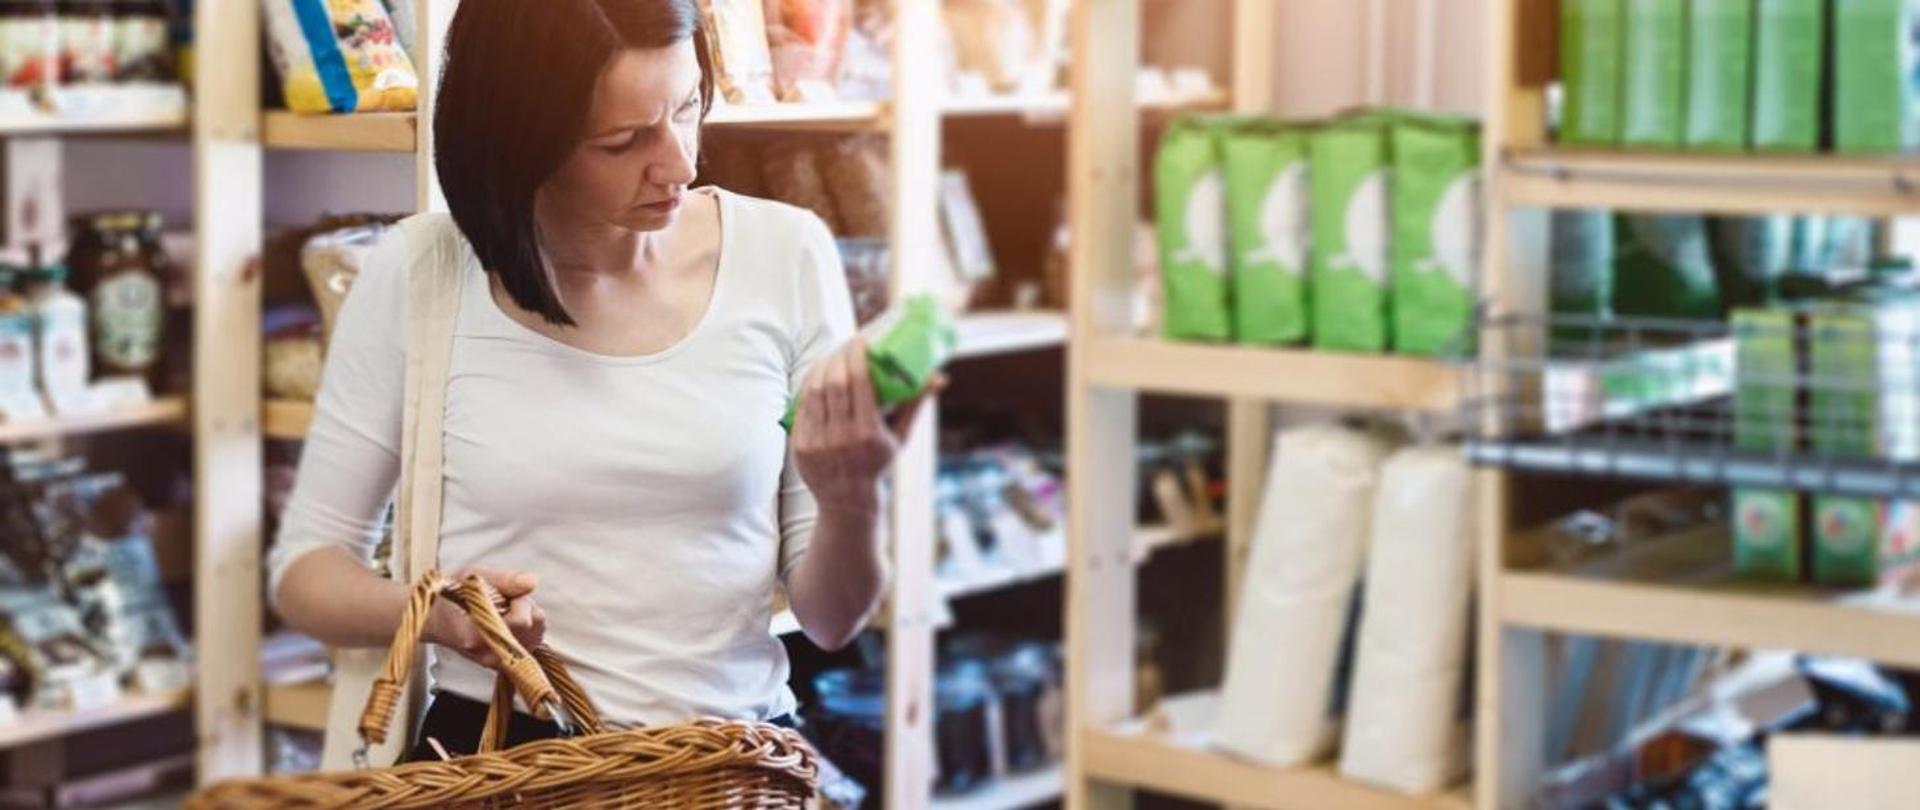 kobieta w białej bluzce z koszykiem w sklepie spożywczym ogląda produkt w zielonym opakowaniu.